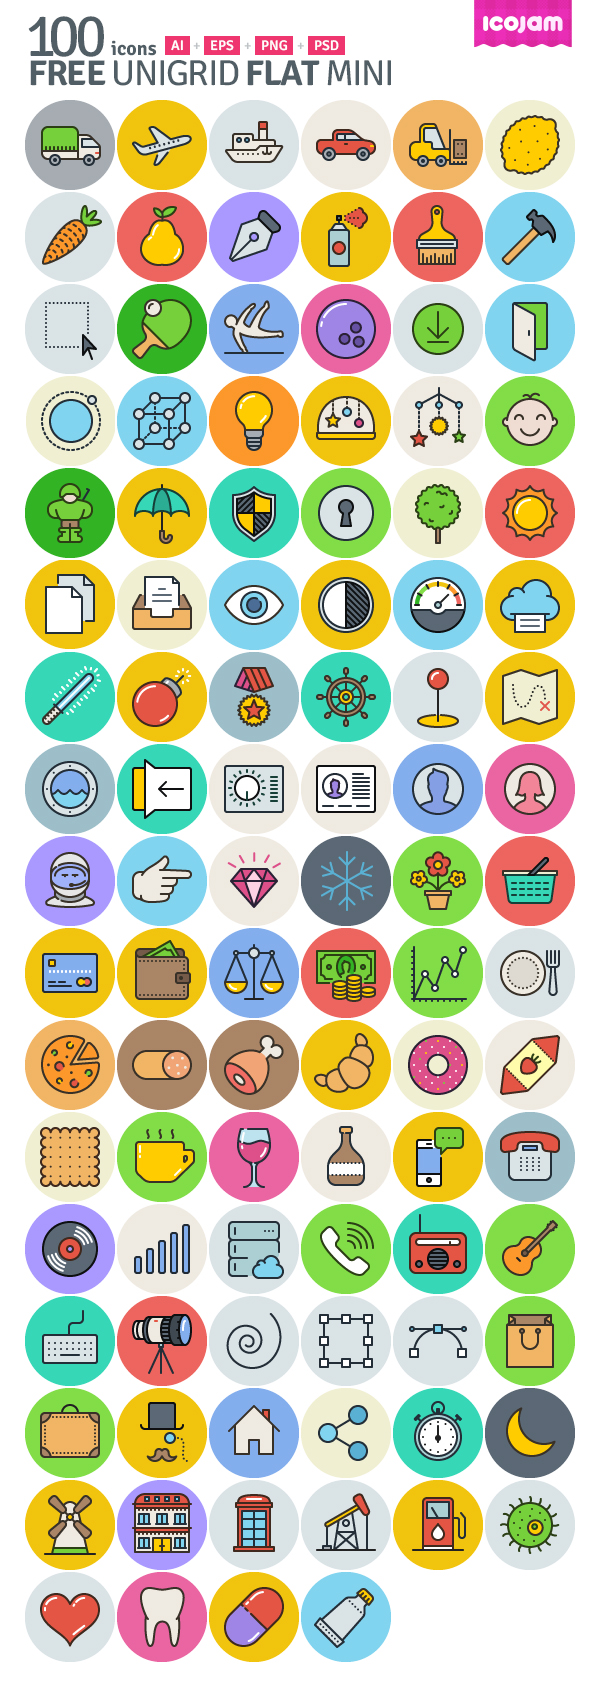 Unigrid Flat: 100 Free Icons